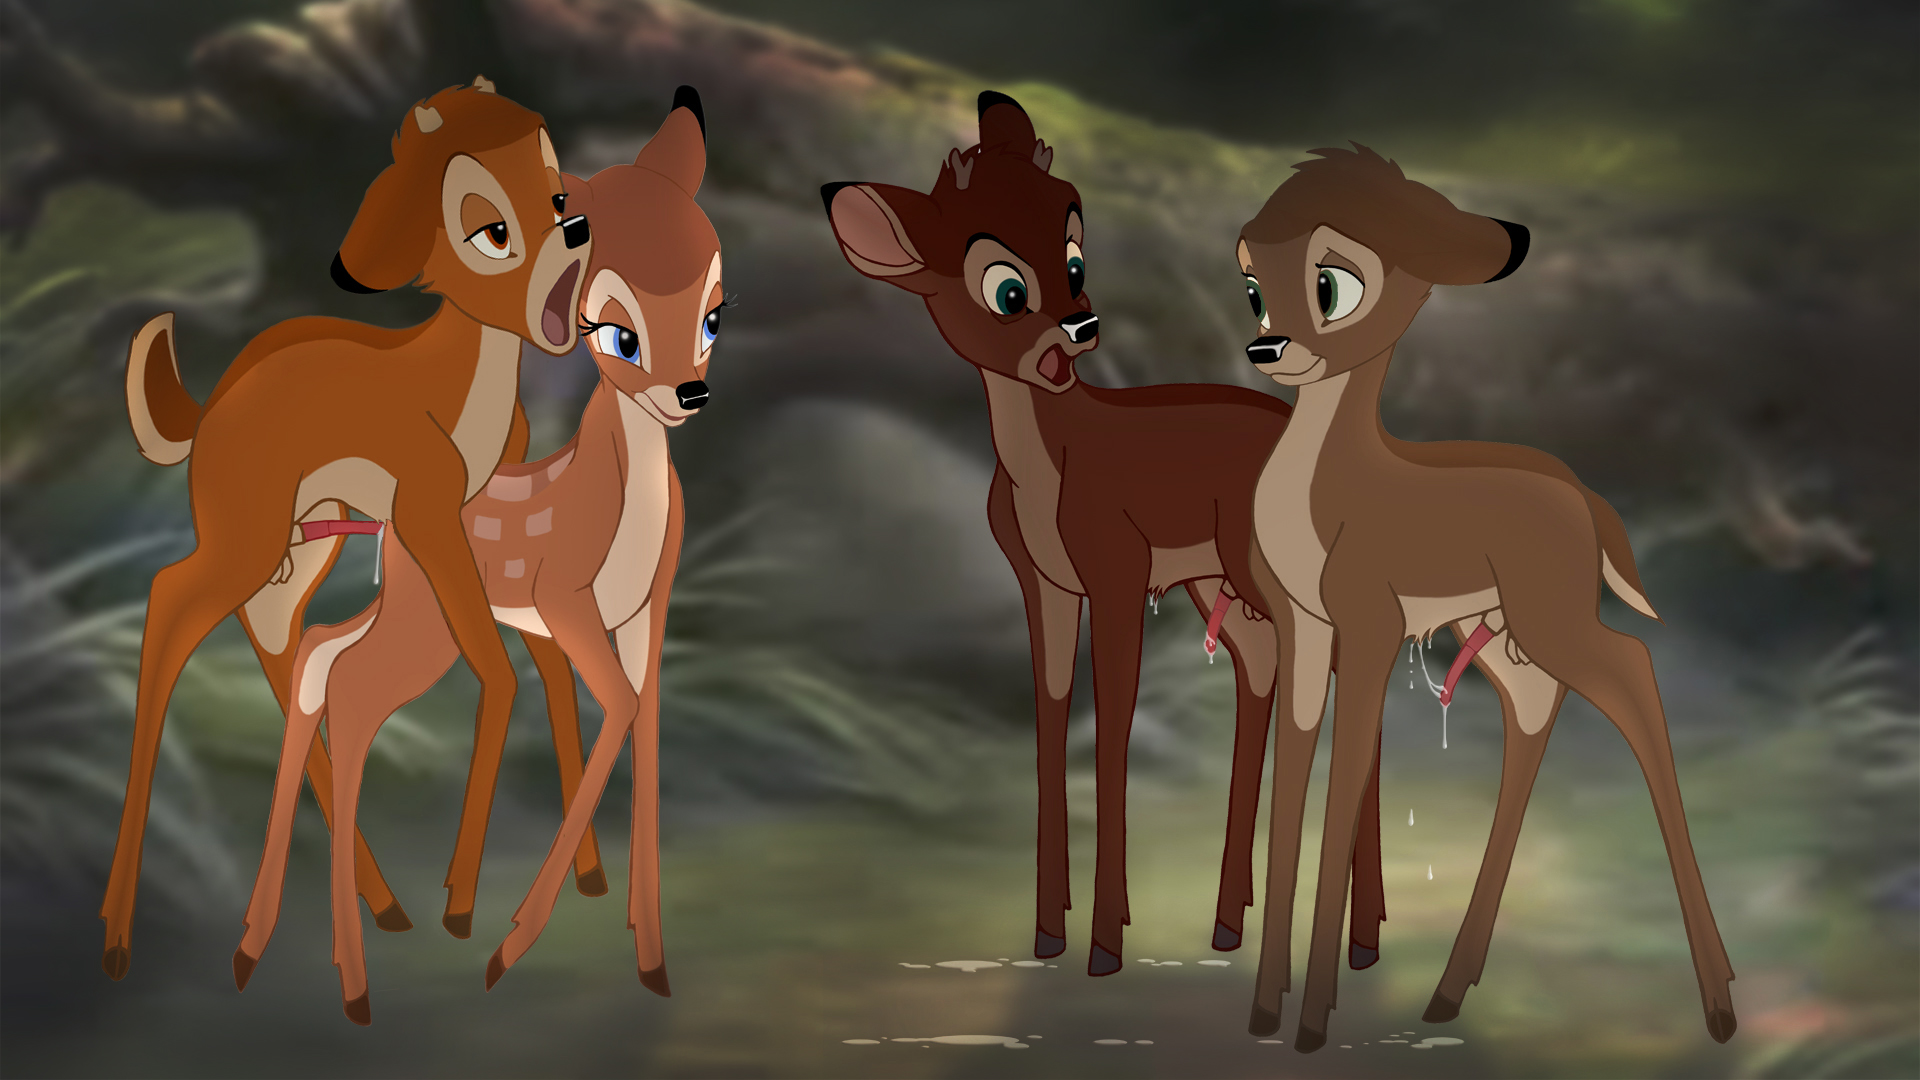 Bambi rule 34